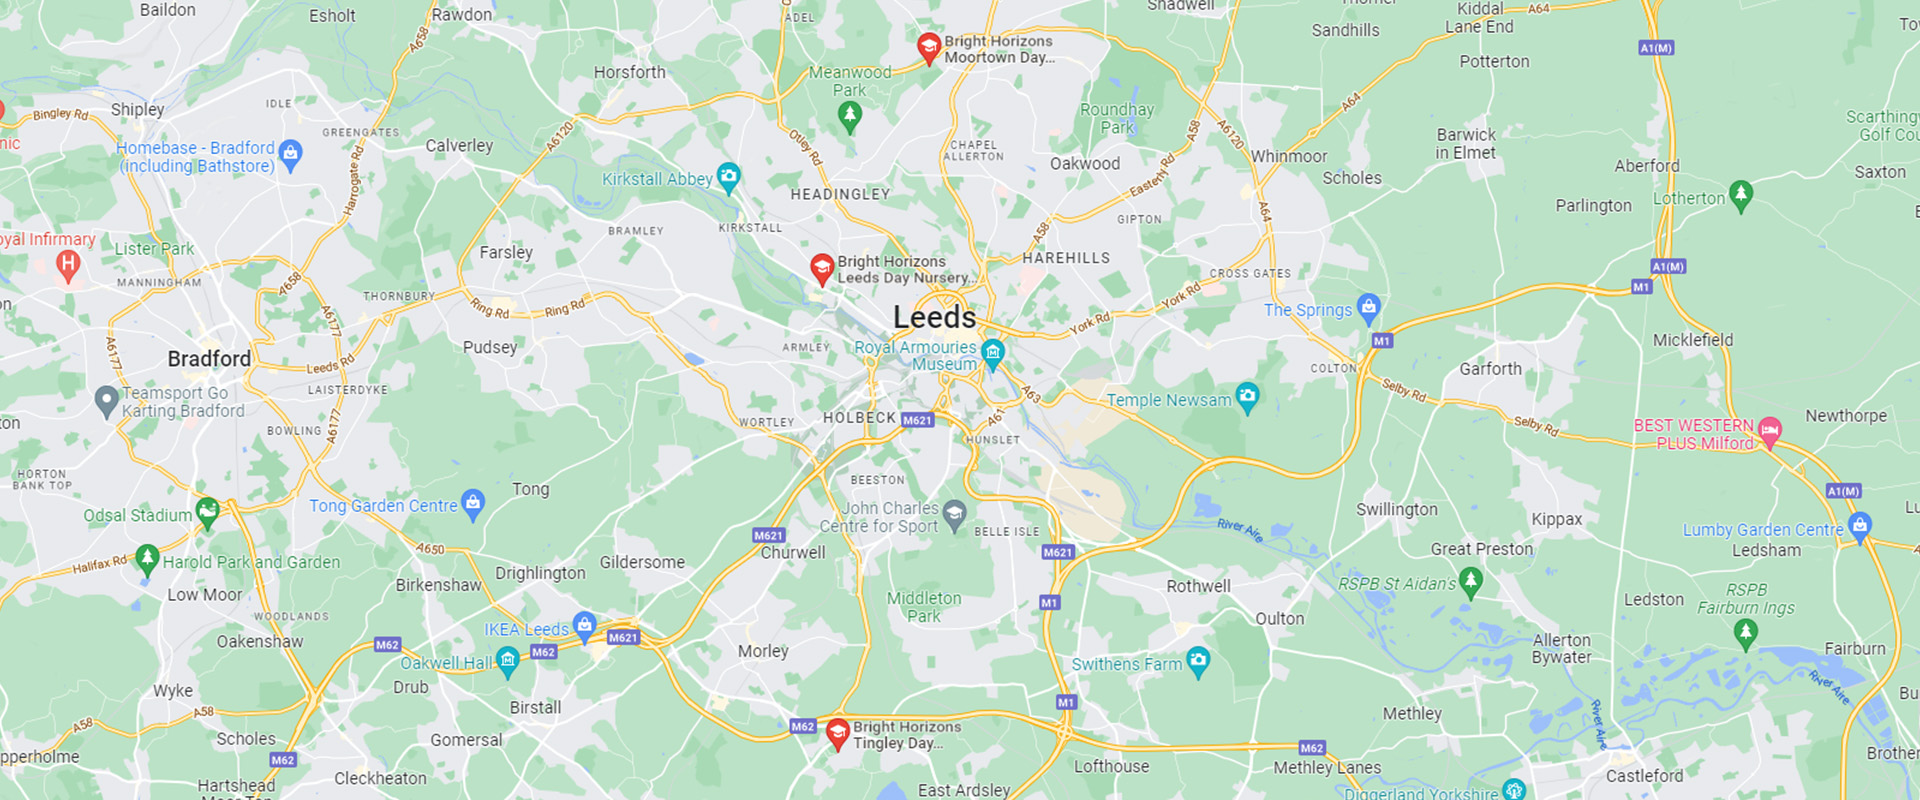 Day Nurseries and Preschools in Leeds